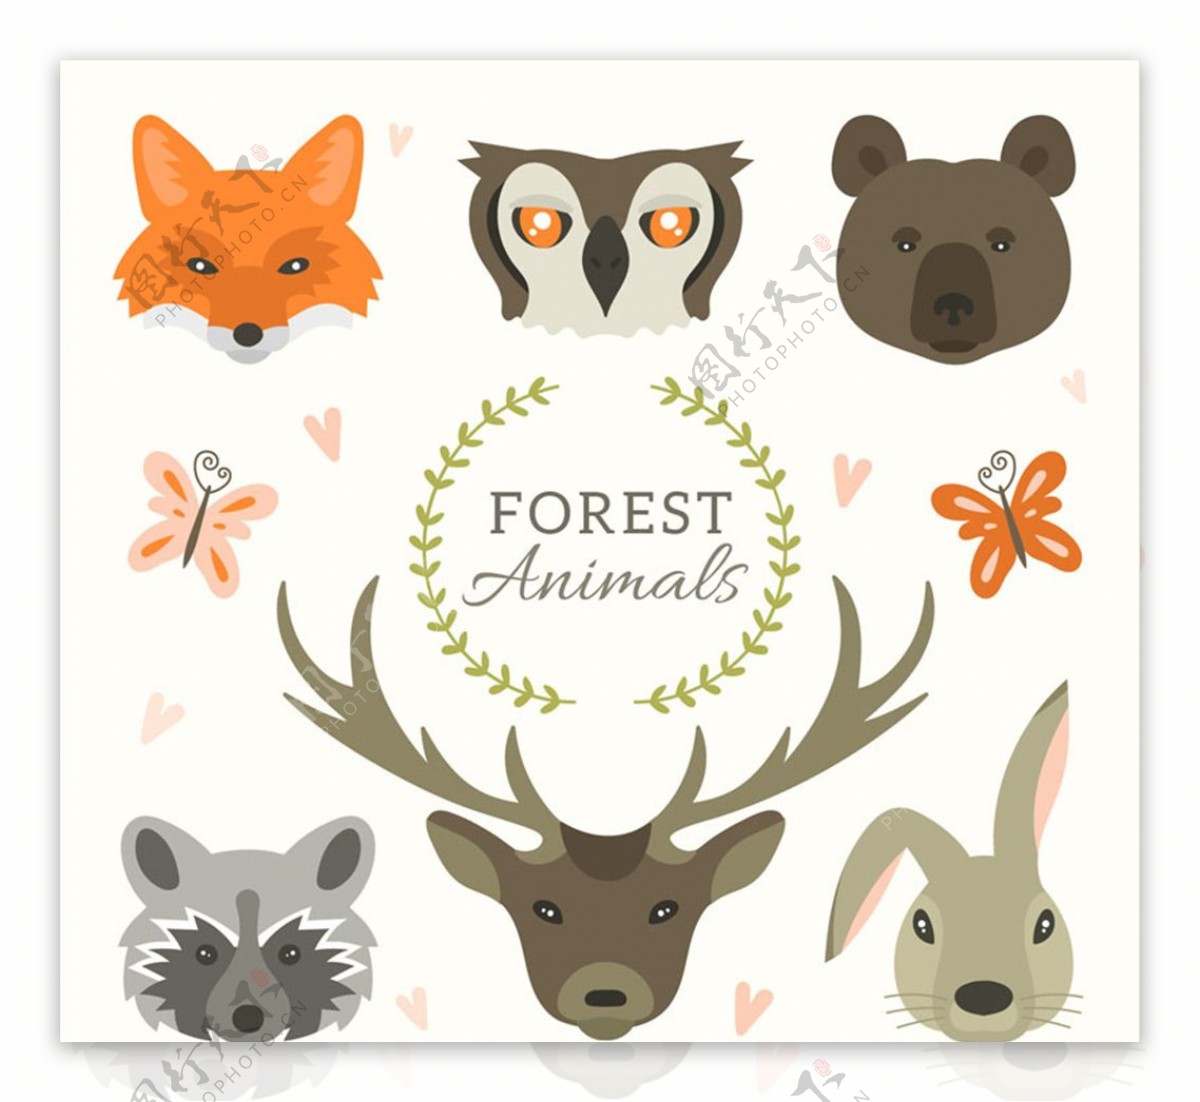 8款森林动物设计矢量素材